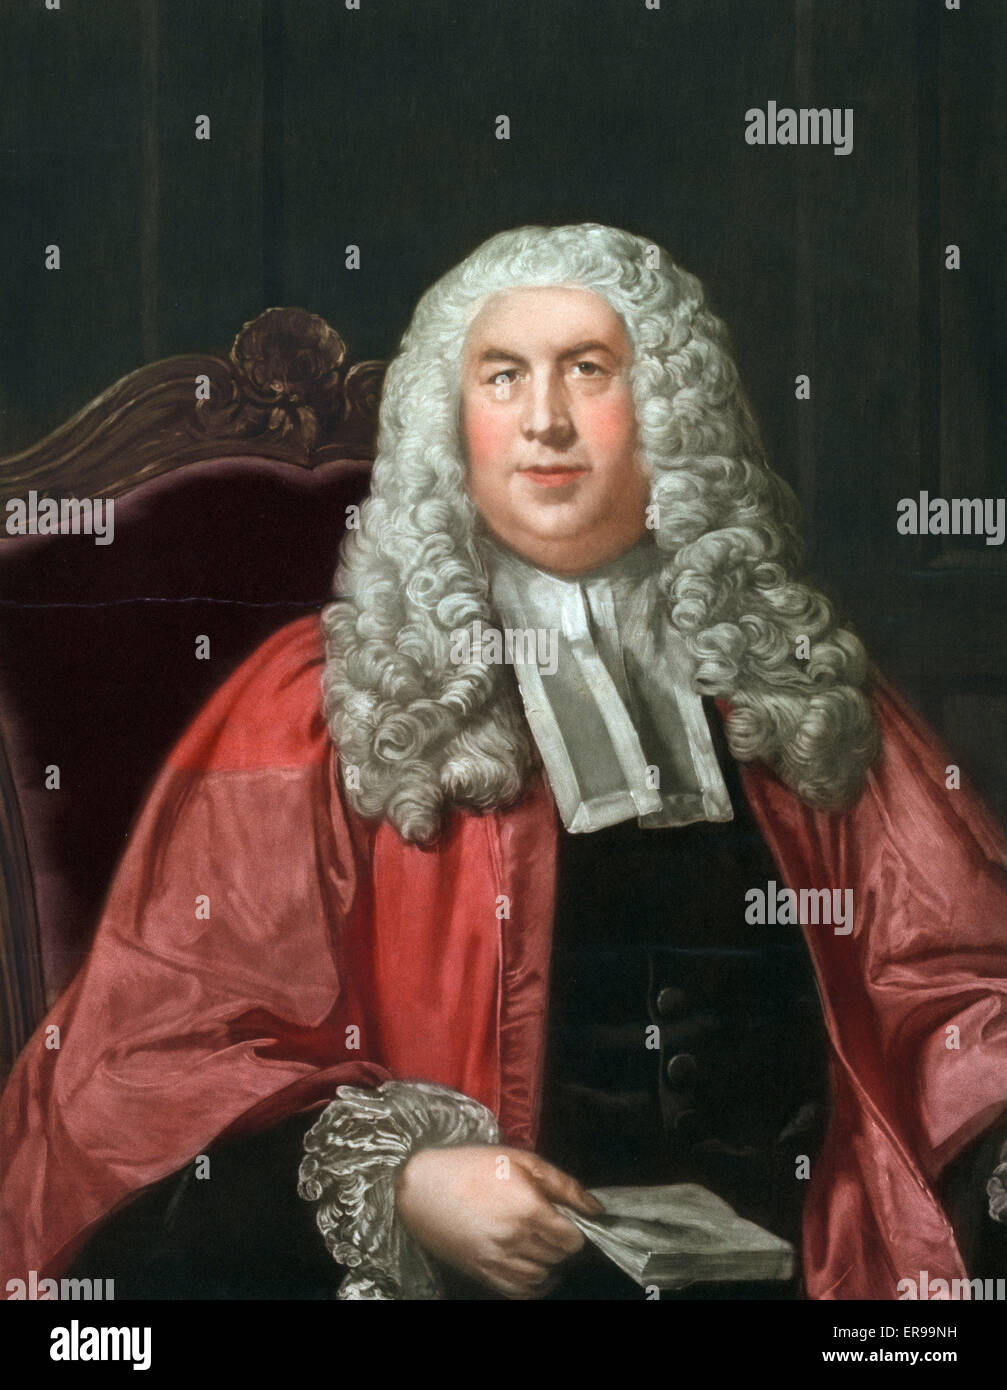 Sir William Blackstone, Brustbild, sitzend, mit Blick auf etwas verlassen. Datum c1930. Stockfoto